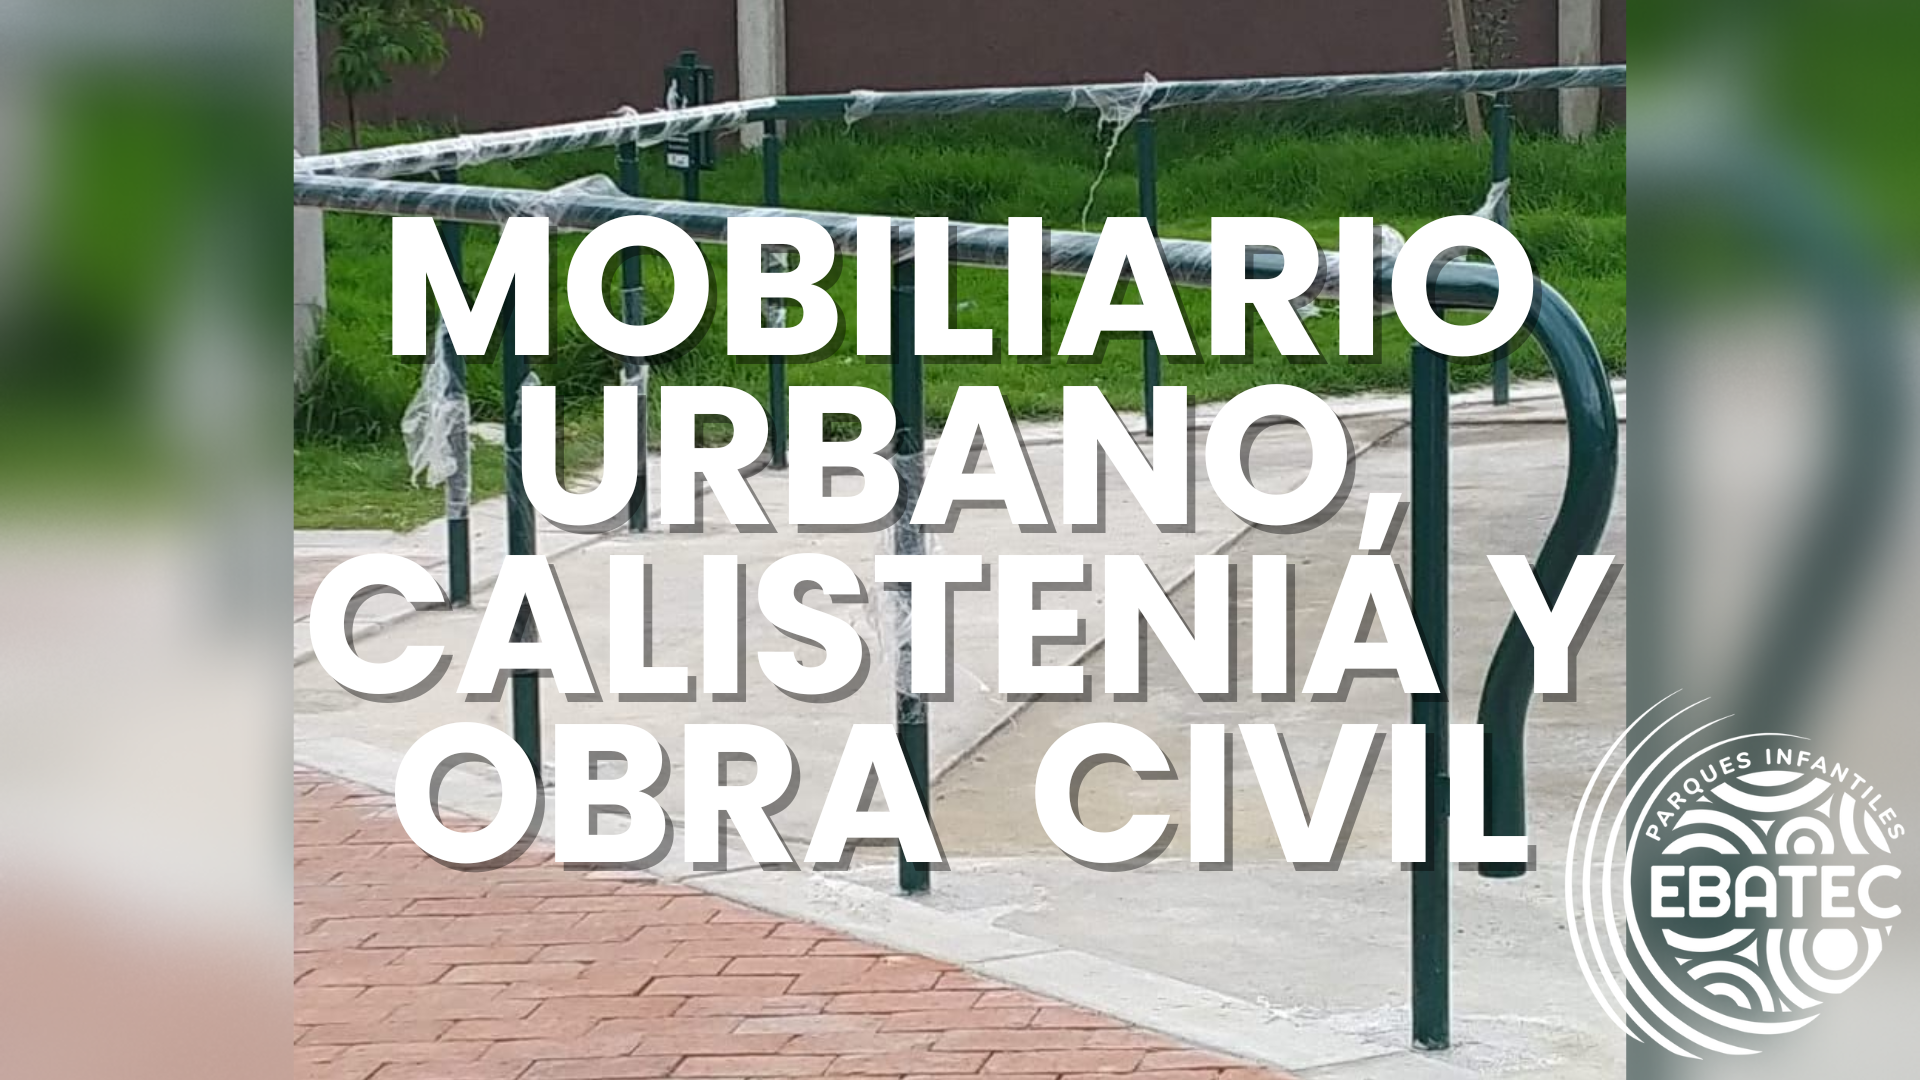 Mobiliario Urbano, Calistenia y Obra civil